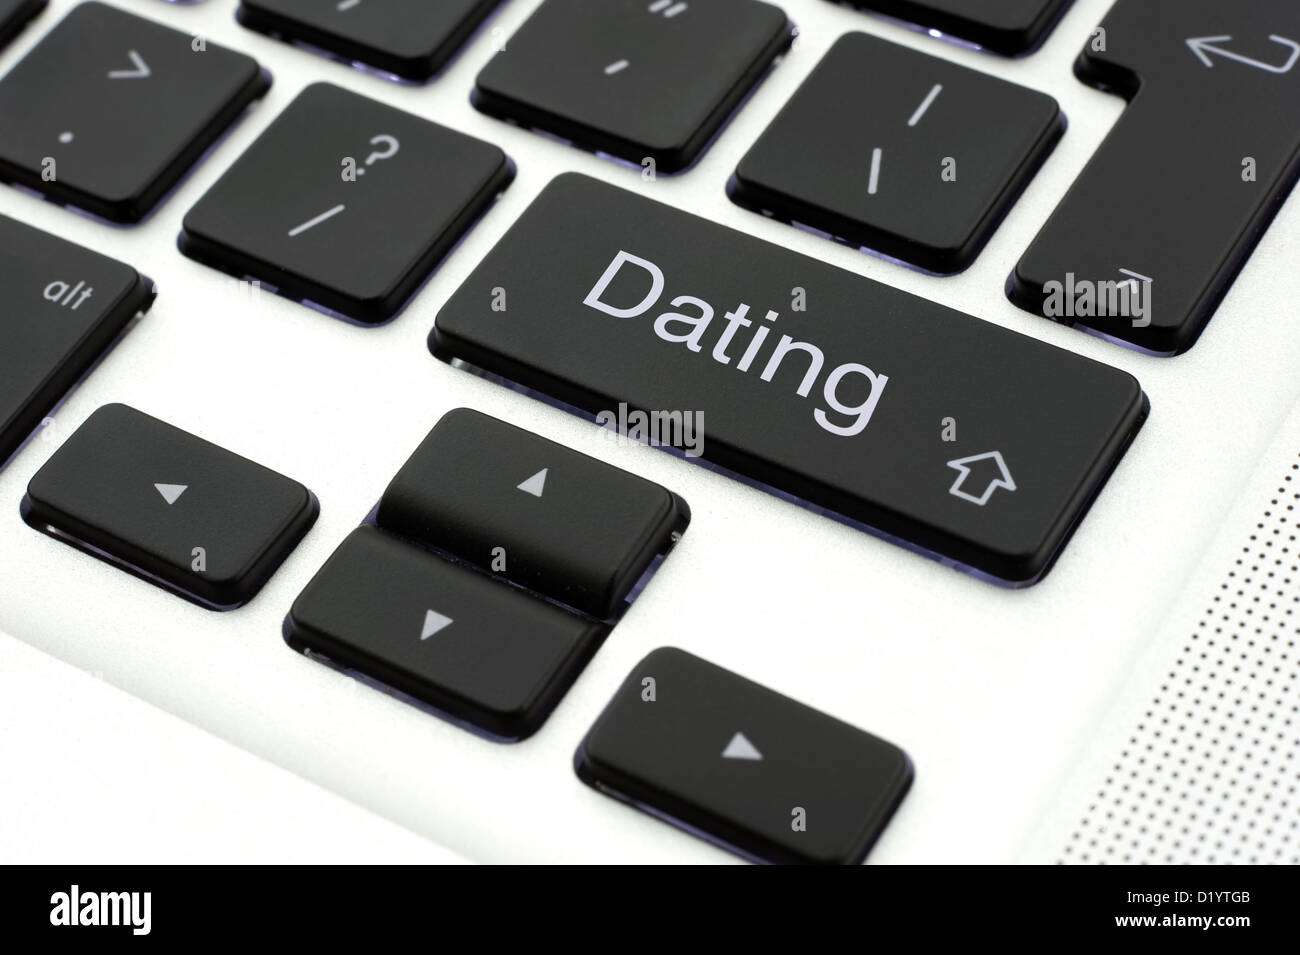 Dating botón en el teclado de un portátil Foto de stock